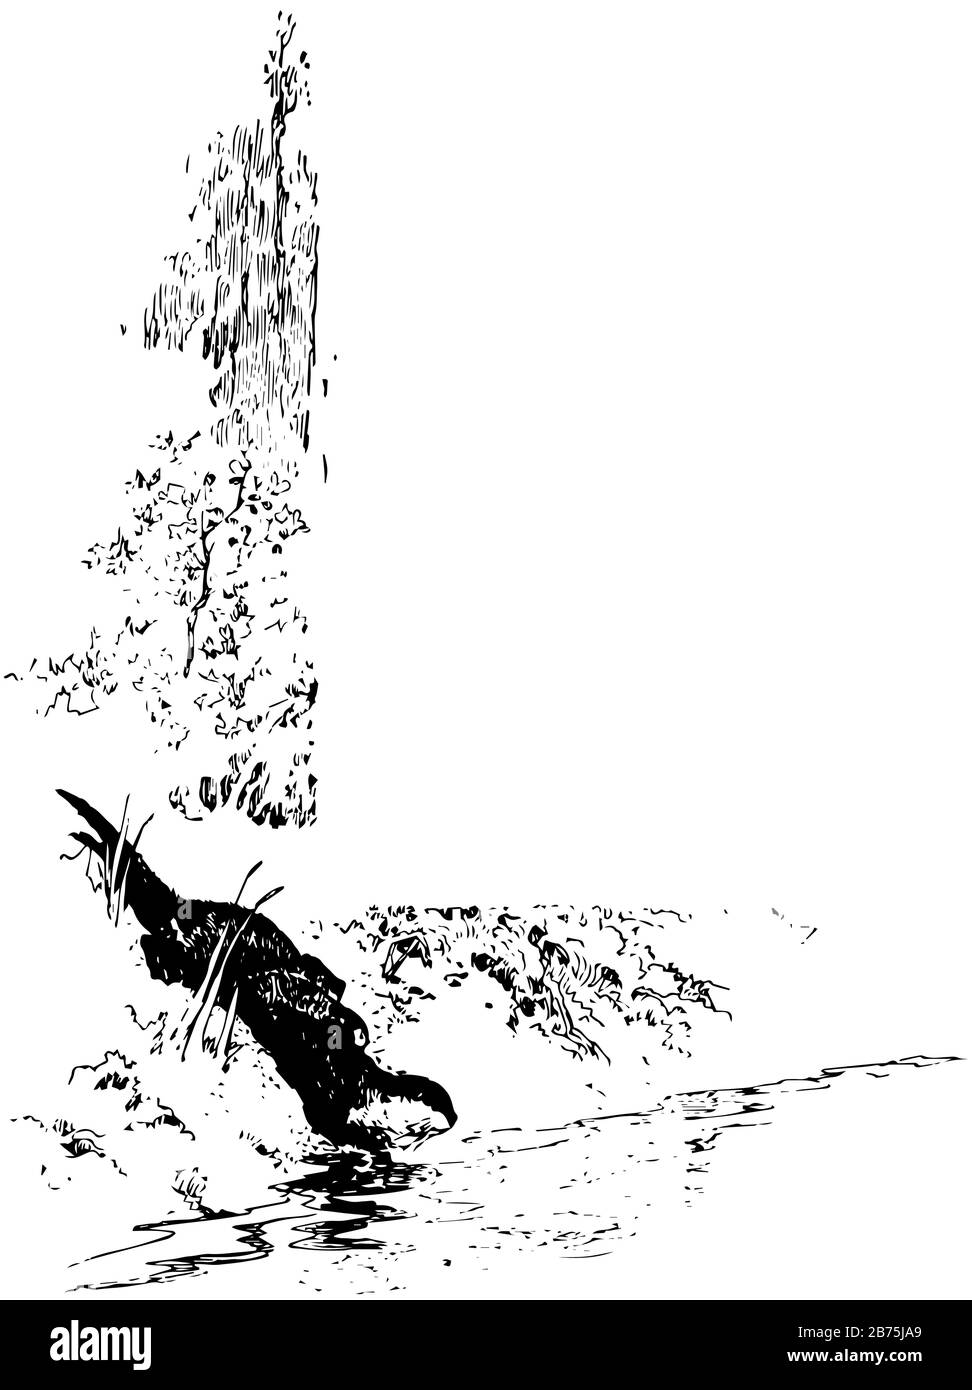 Seeotter in Wasser in diesem Bild, Vintage-Linien-Zeichnung oder Gravurzeichnung. Stock Vektor